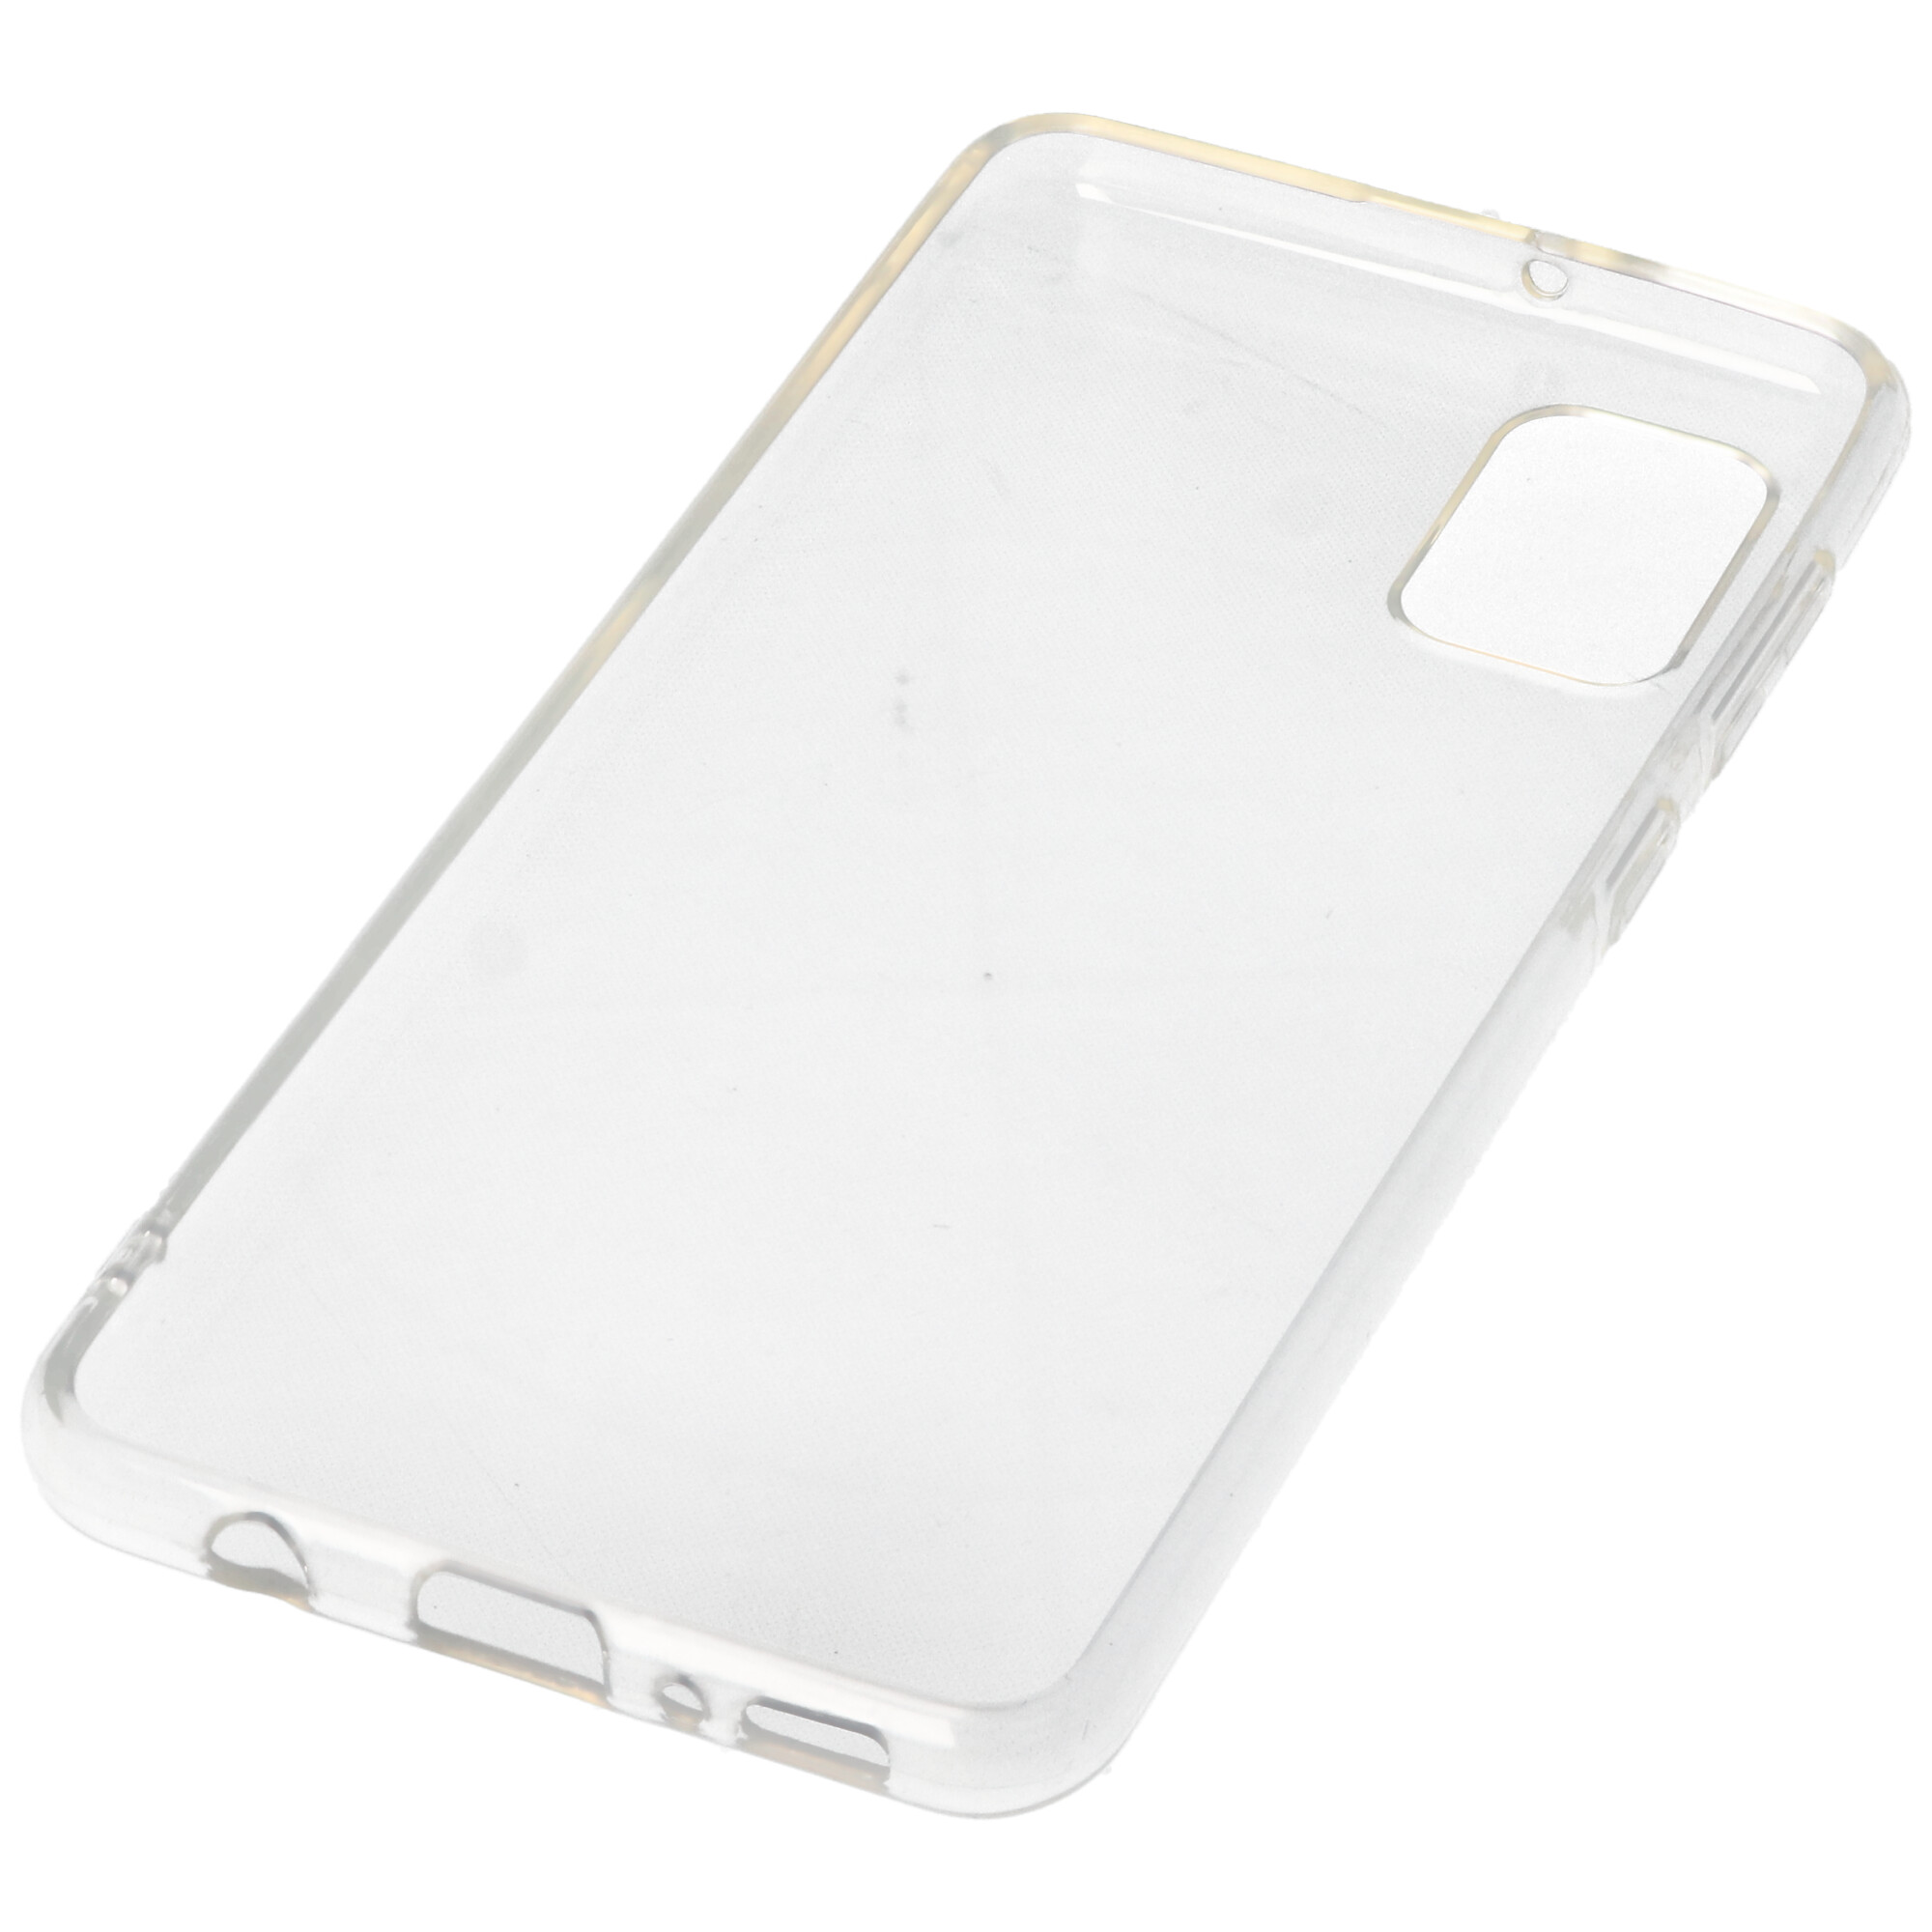 Hülle passend für Samsung Galaxy A31 - transparente Schutzhülle, Anti-Gelb Luftkissen Fallschutz Silikon Handyhülle robustes TPU Case